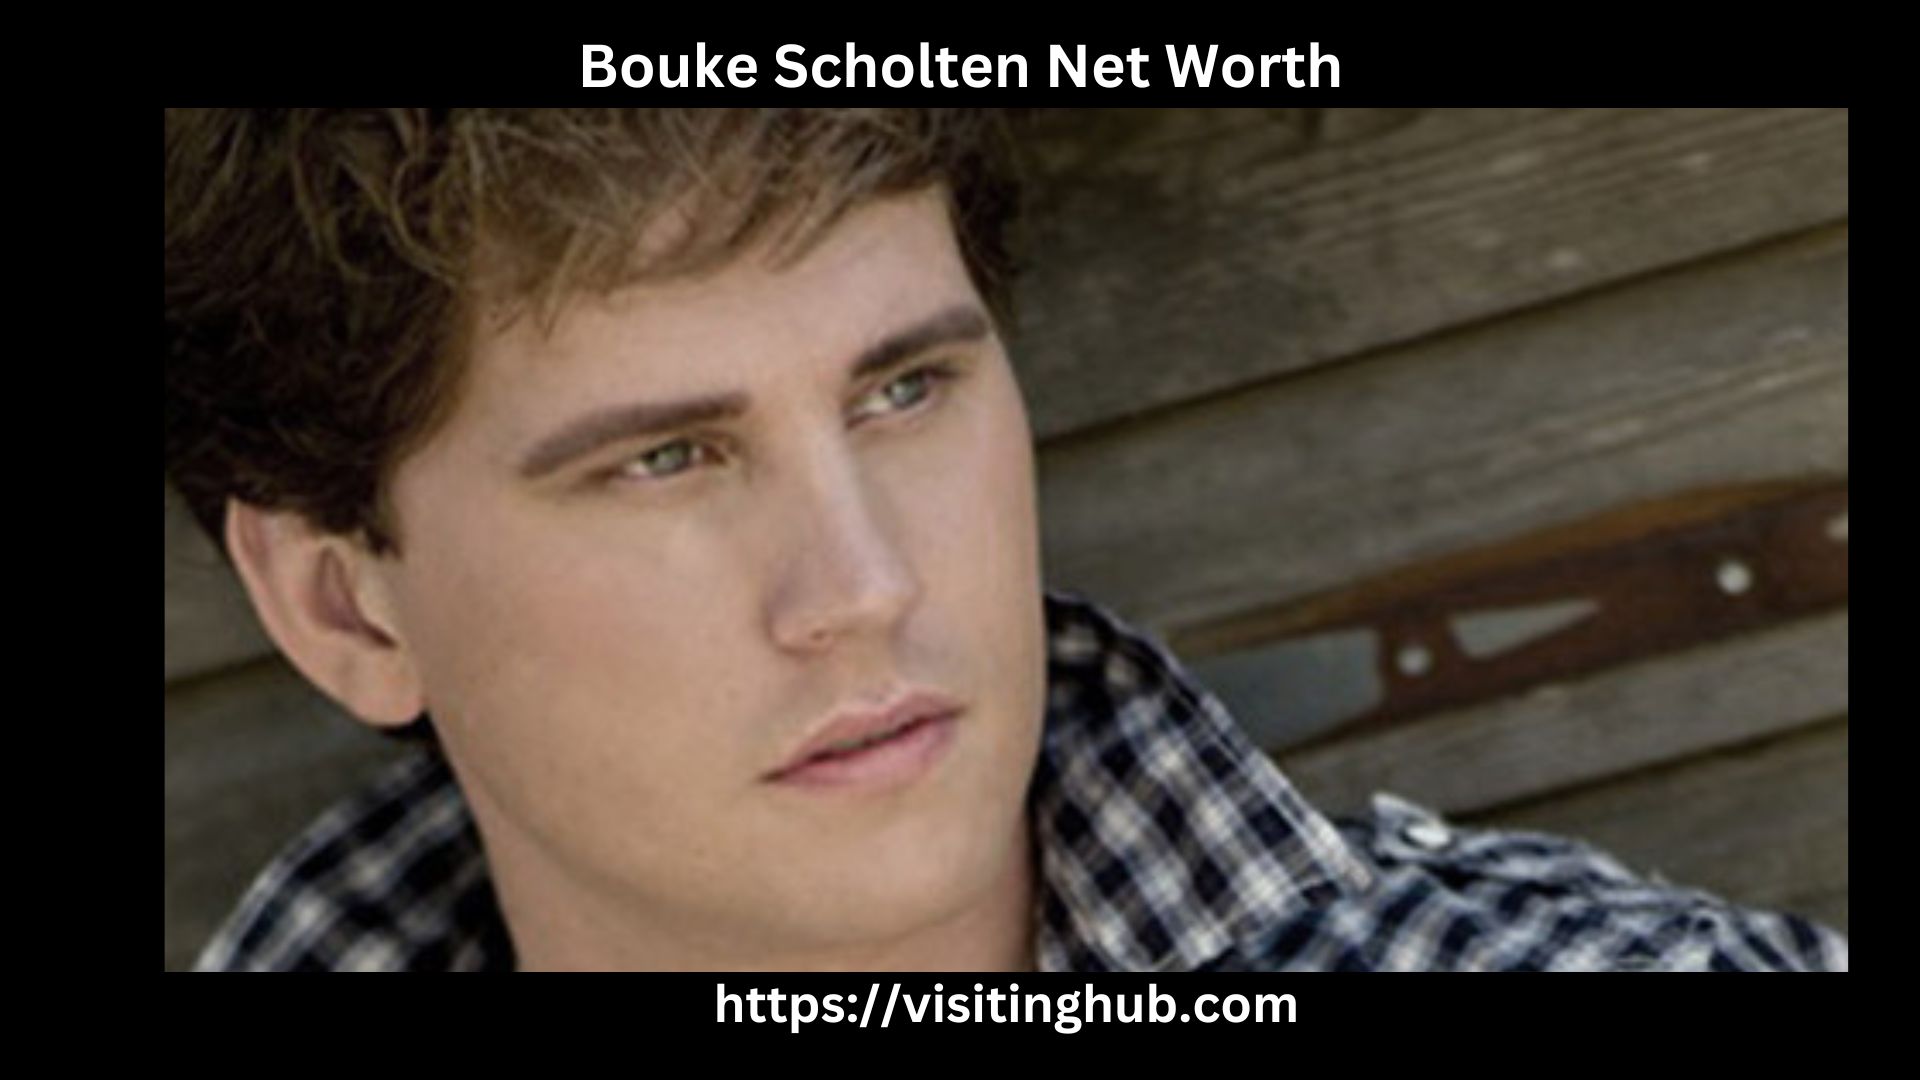 Bouke Scholten Net Worth